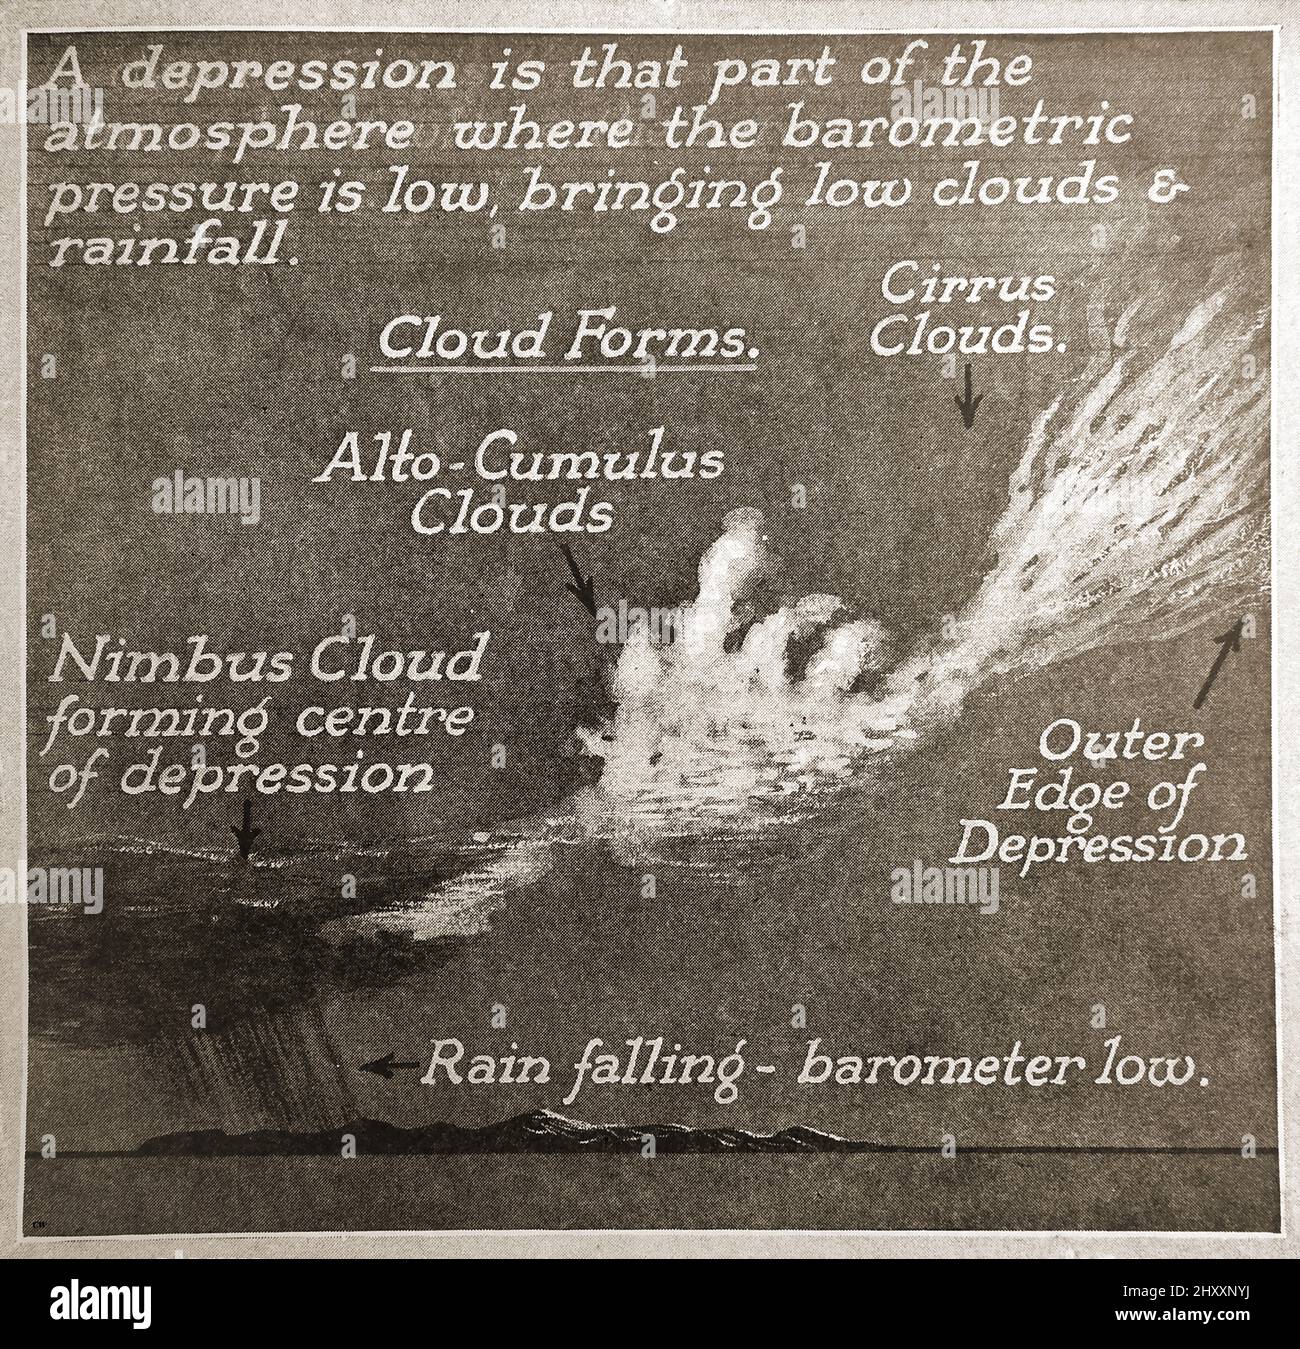 Eine alte meteorologische Grafik aus dem Jahr c1940, die zeigt, wie eine Depression auftritt. Stockfoto